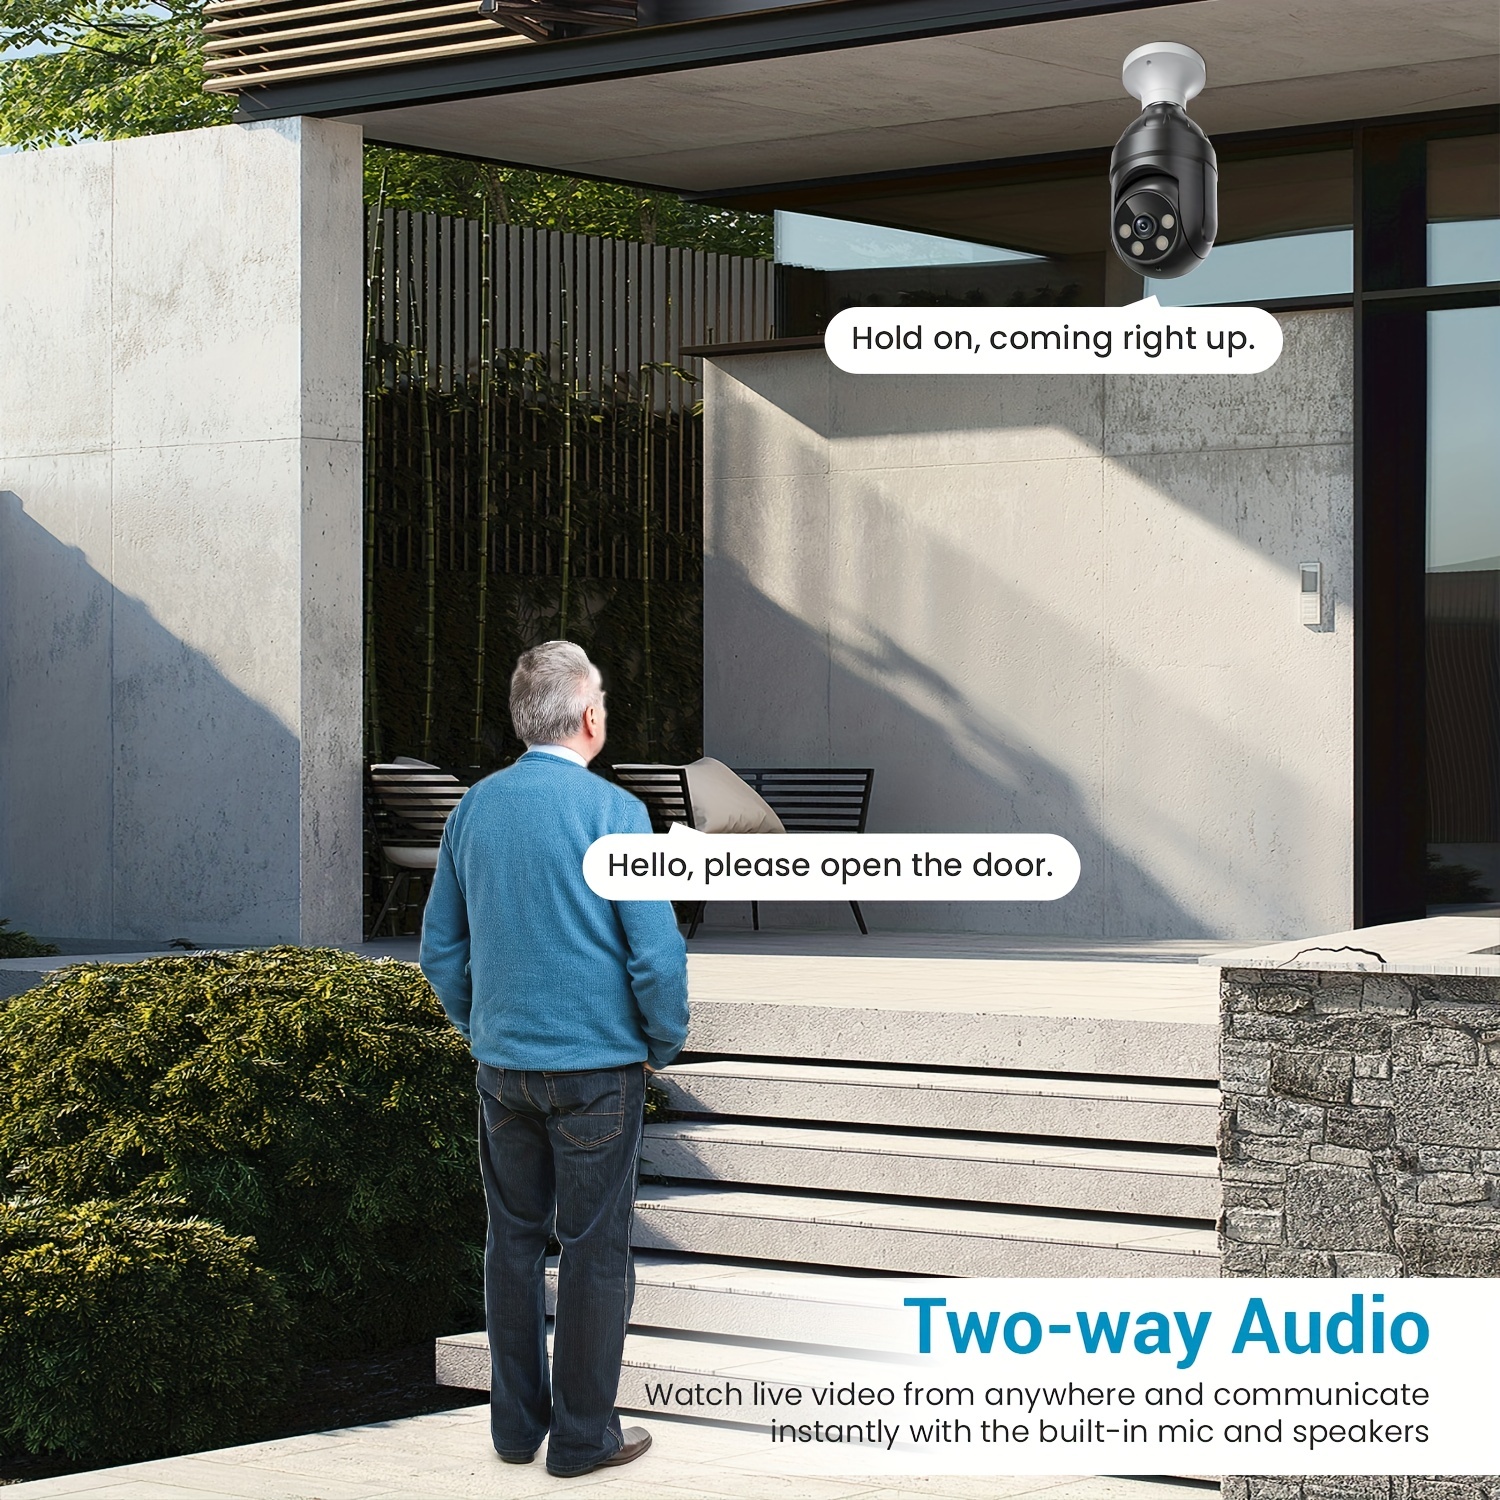 Camara de Seguridad Para Casas Vision Nocturna 1080p Camara Vigilancia  Exterior